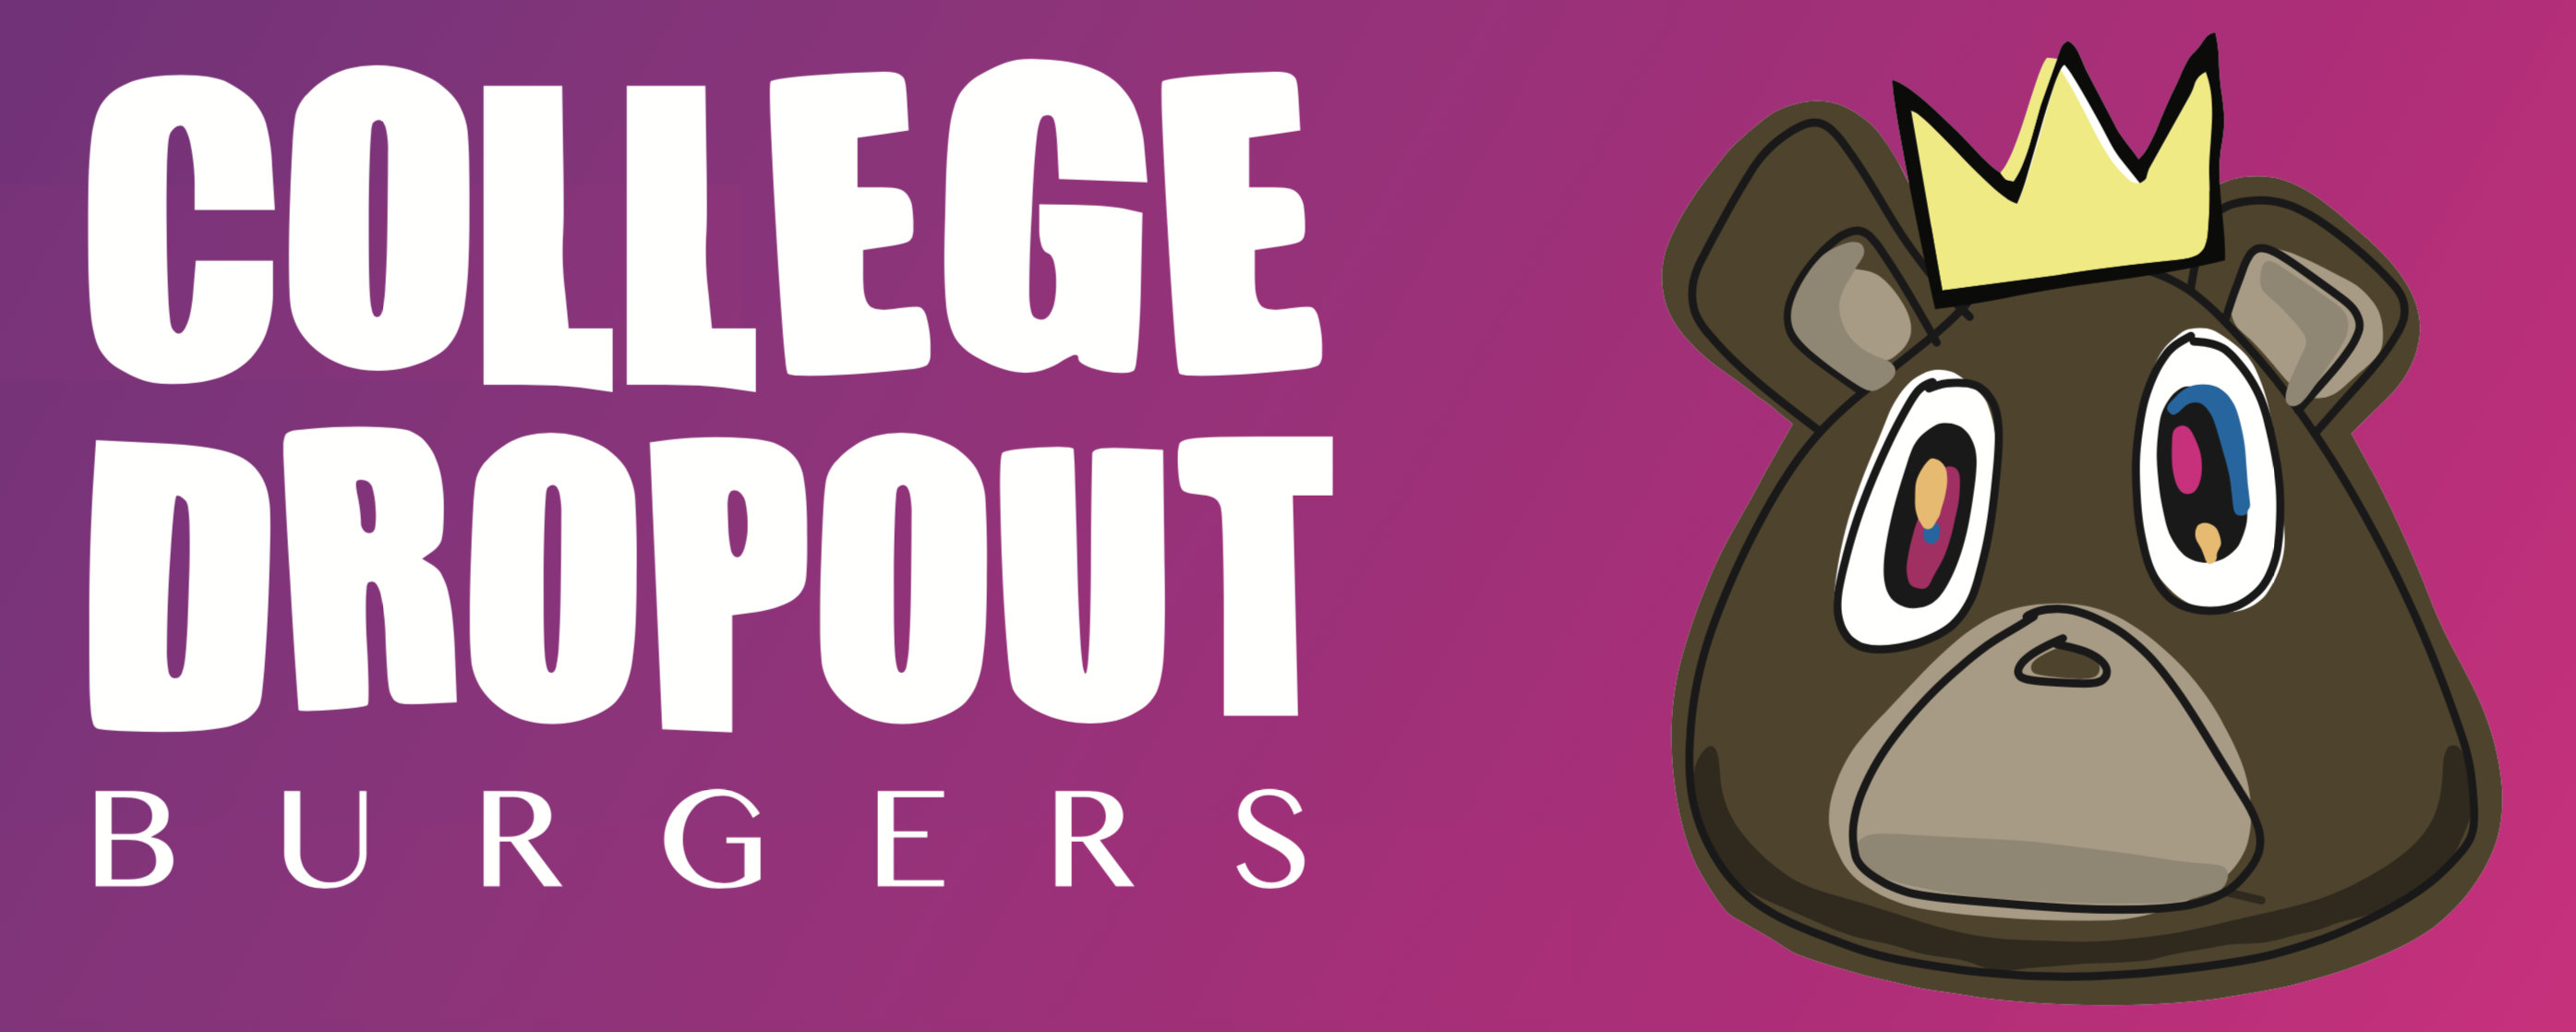 澳洲漢堡店採用了肯伊威斯特的輟學熊標誌logo